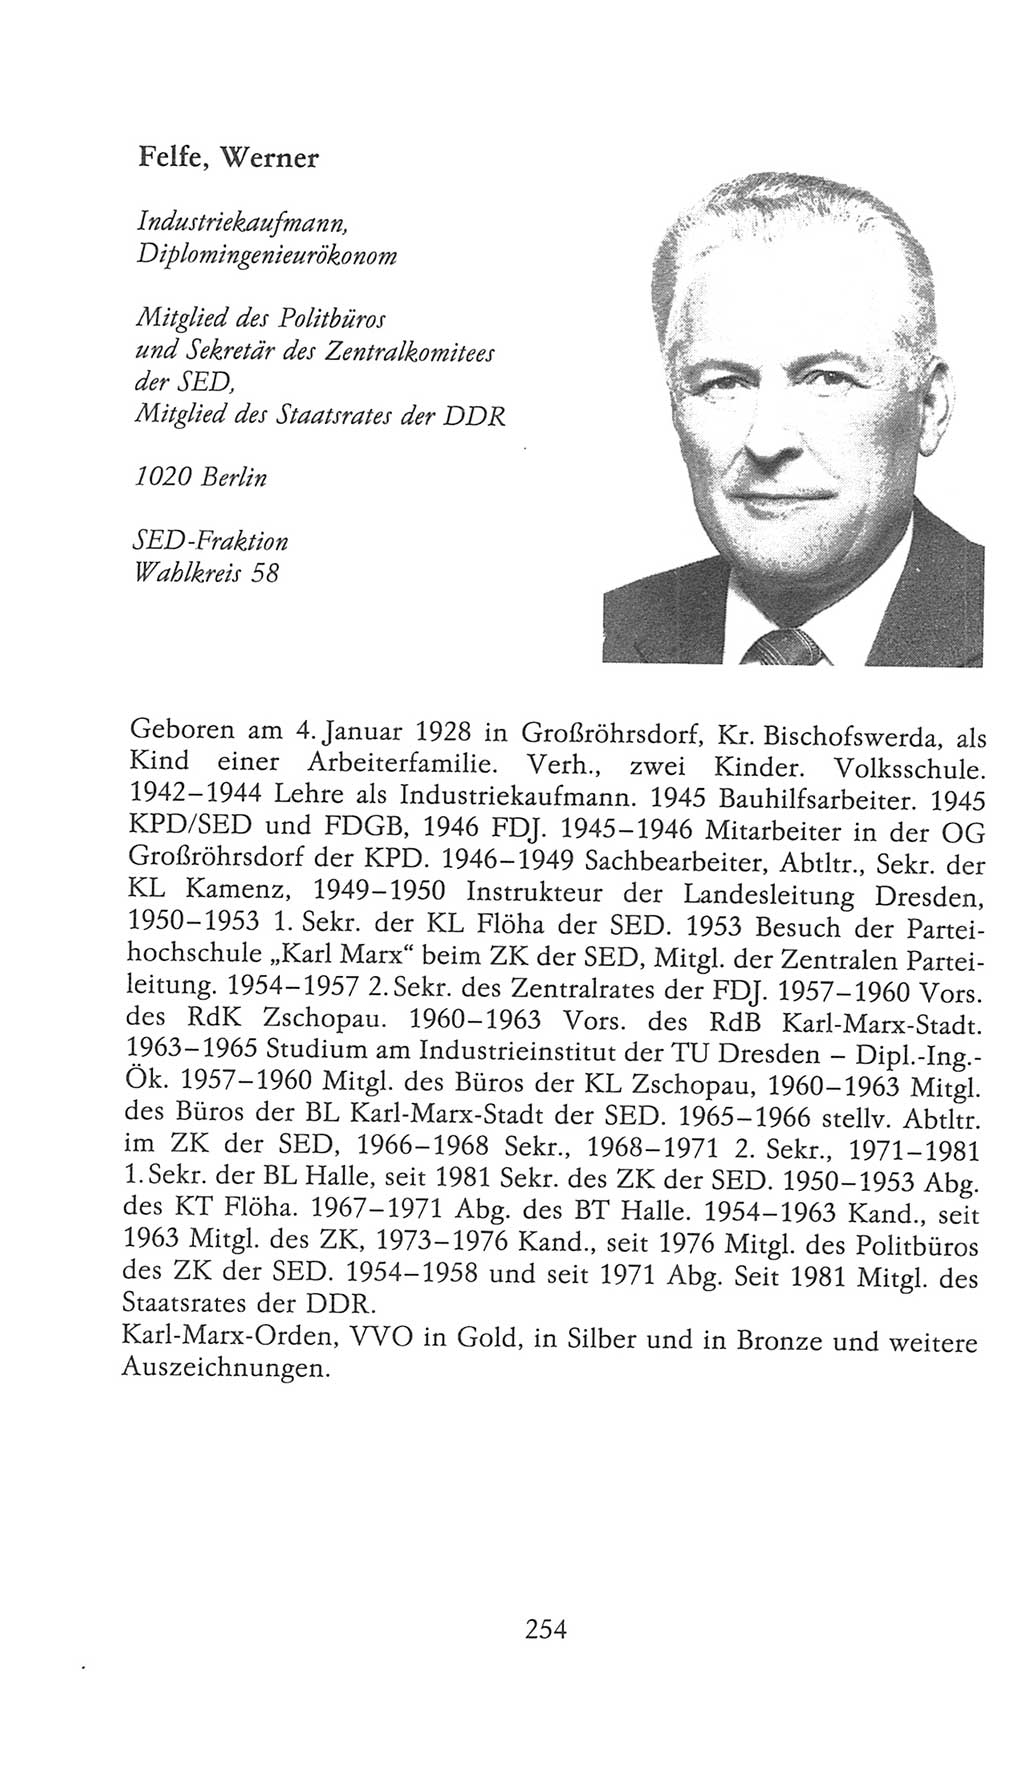 Volkskammer (VK) der Deutschen Demokratischen Republik (DDR), 9. Wahlperiode 1986-1990, Seite 254 (VK. DDR 9. WP. 1986-1990, S. 254)